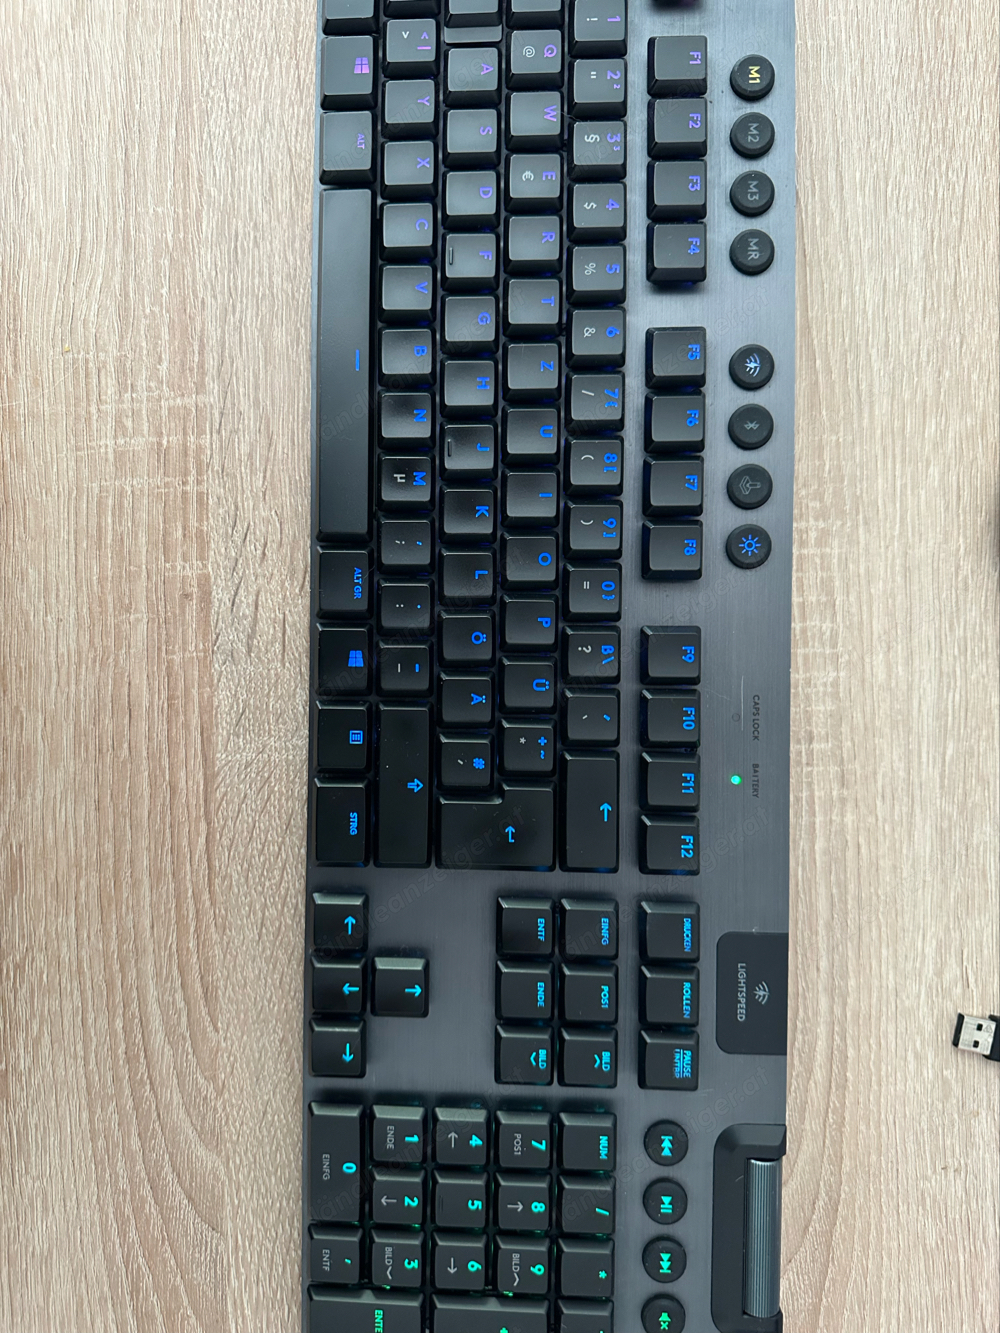 Logitech G915 LIGHTSPEED kabellose mechanische Gaming-Tastatur